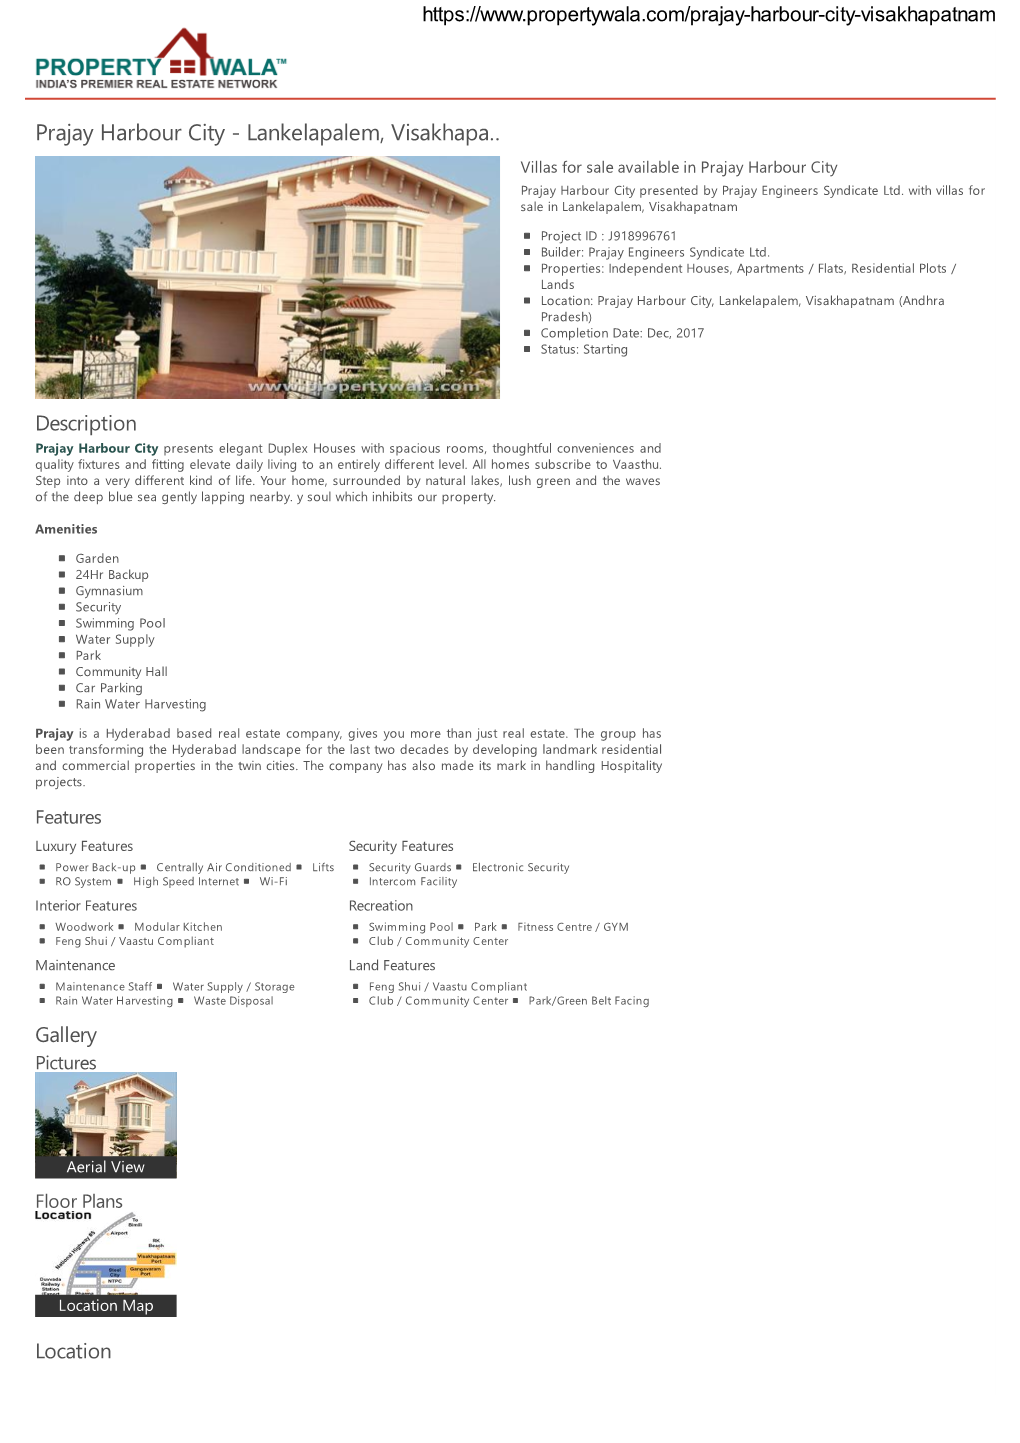 Prajay Harbour City - Lankelapalem, Visakhapa… Villas for Sale Available in Prajay Harbour City Prajay Harbour City Presented by Prajay Engineers Syndicate Ltd